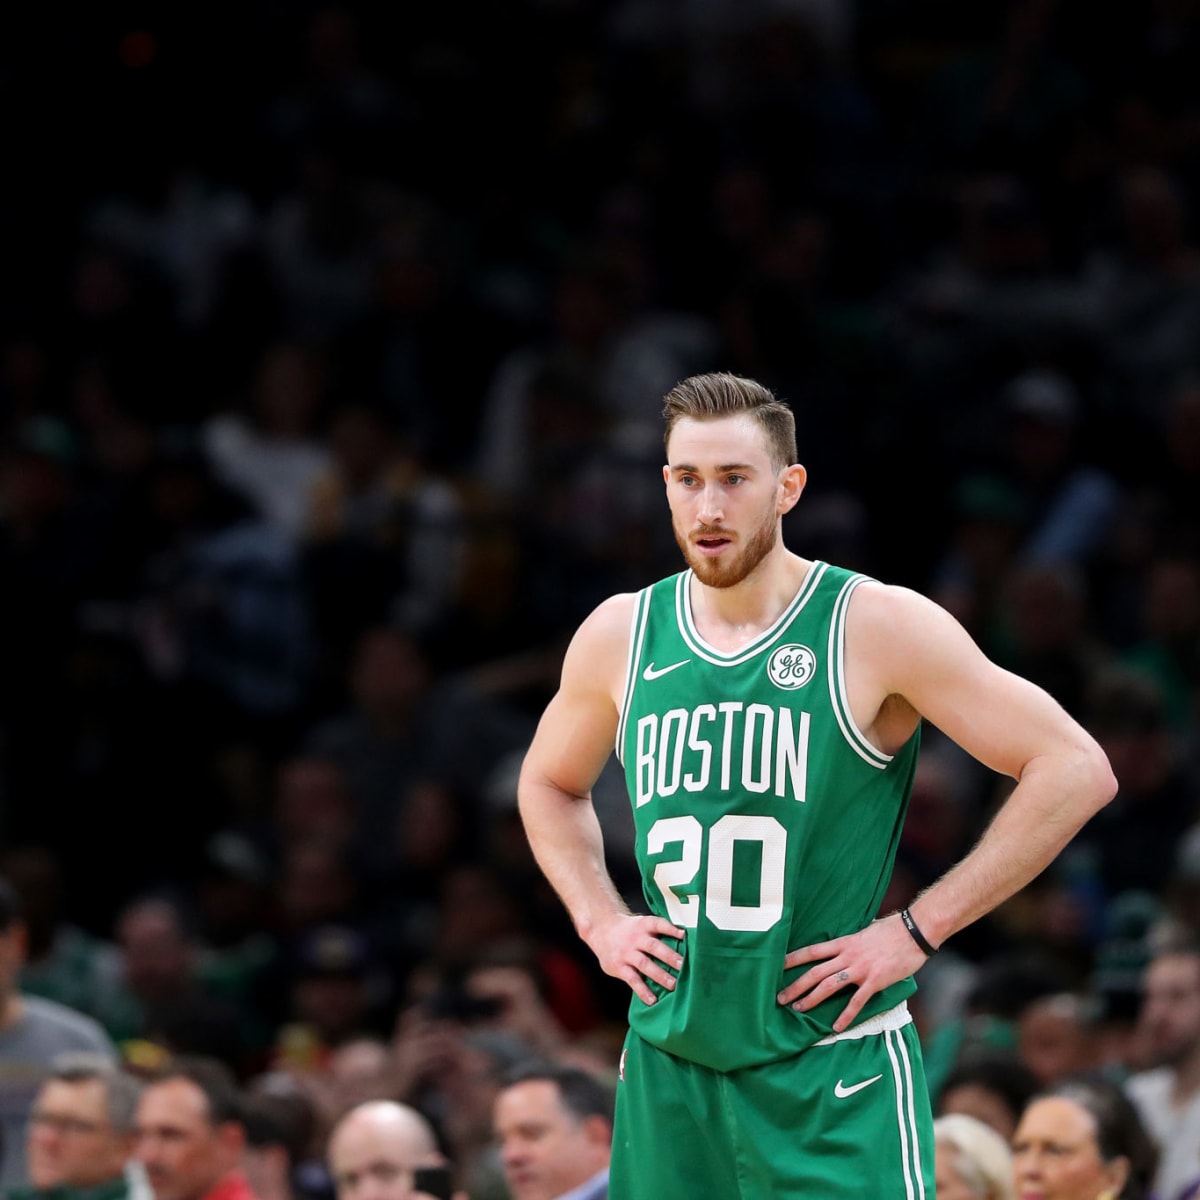 A Medical Look At Devastating Injury To Celtics' Gordon Hayward